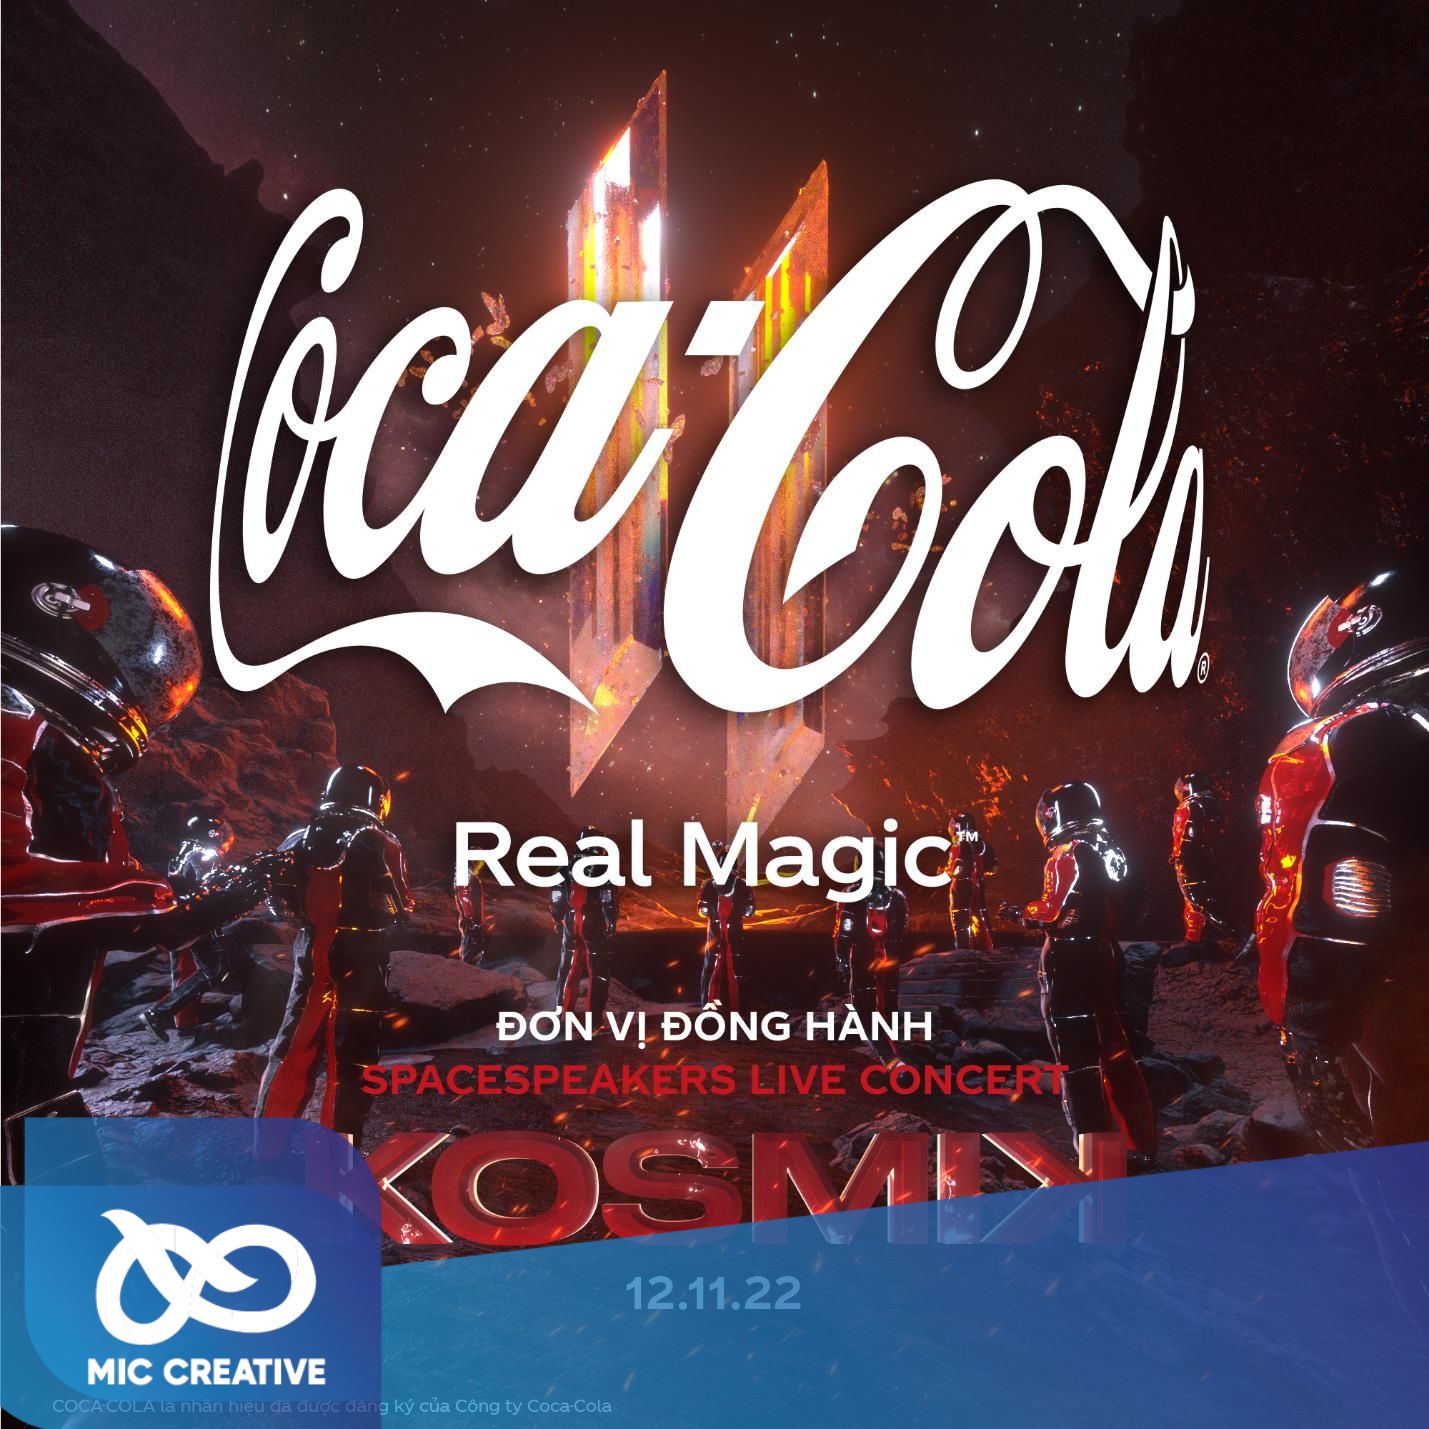 Chiến lược quảng cáo của Coca Cola kết hợp với Spacespeakers trong sự kiện âm nhạc